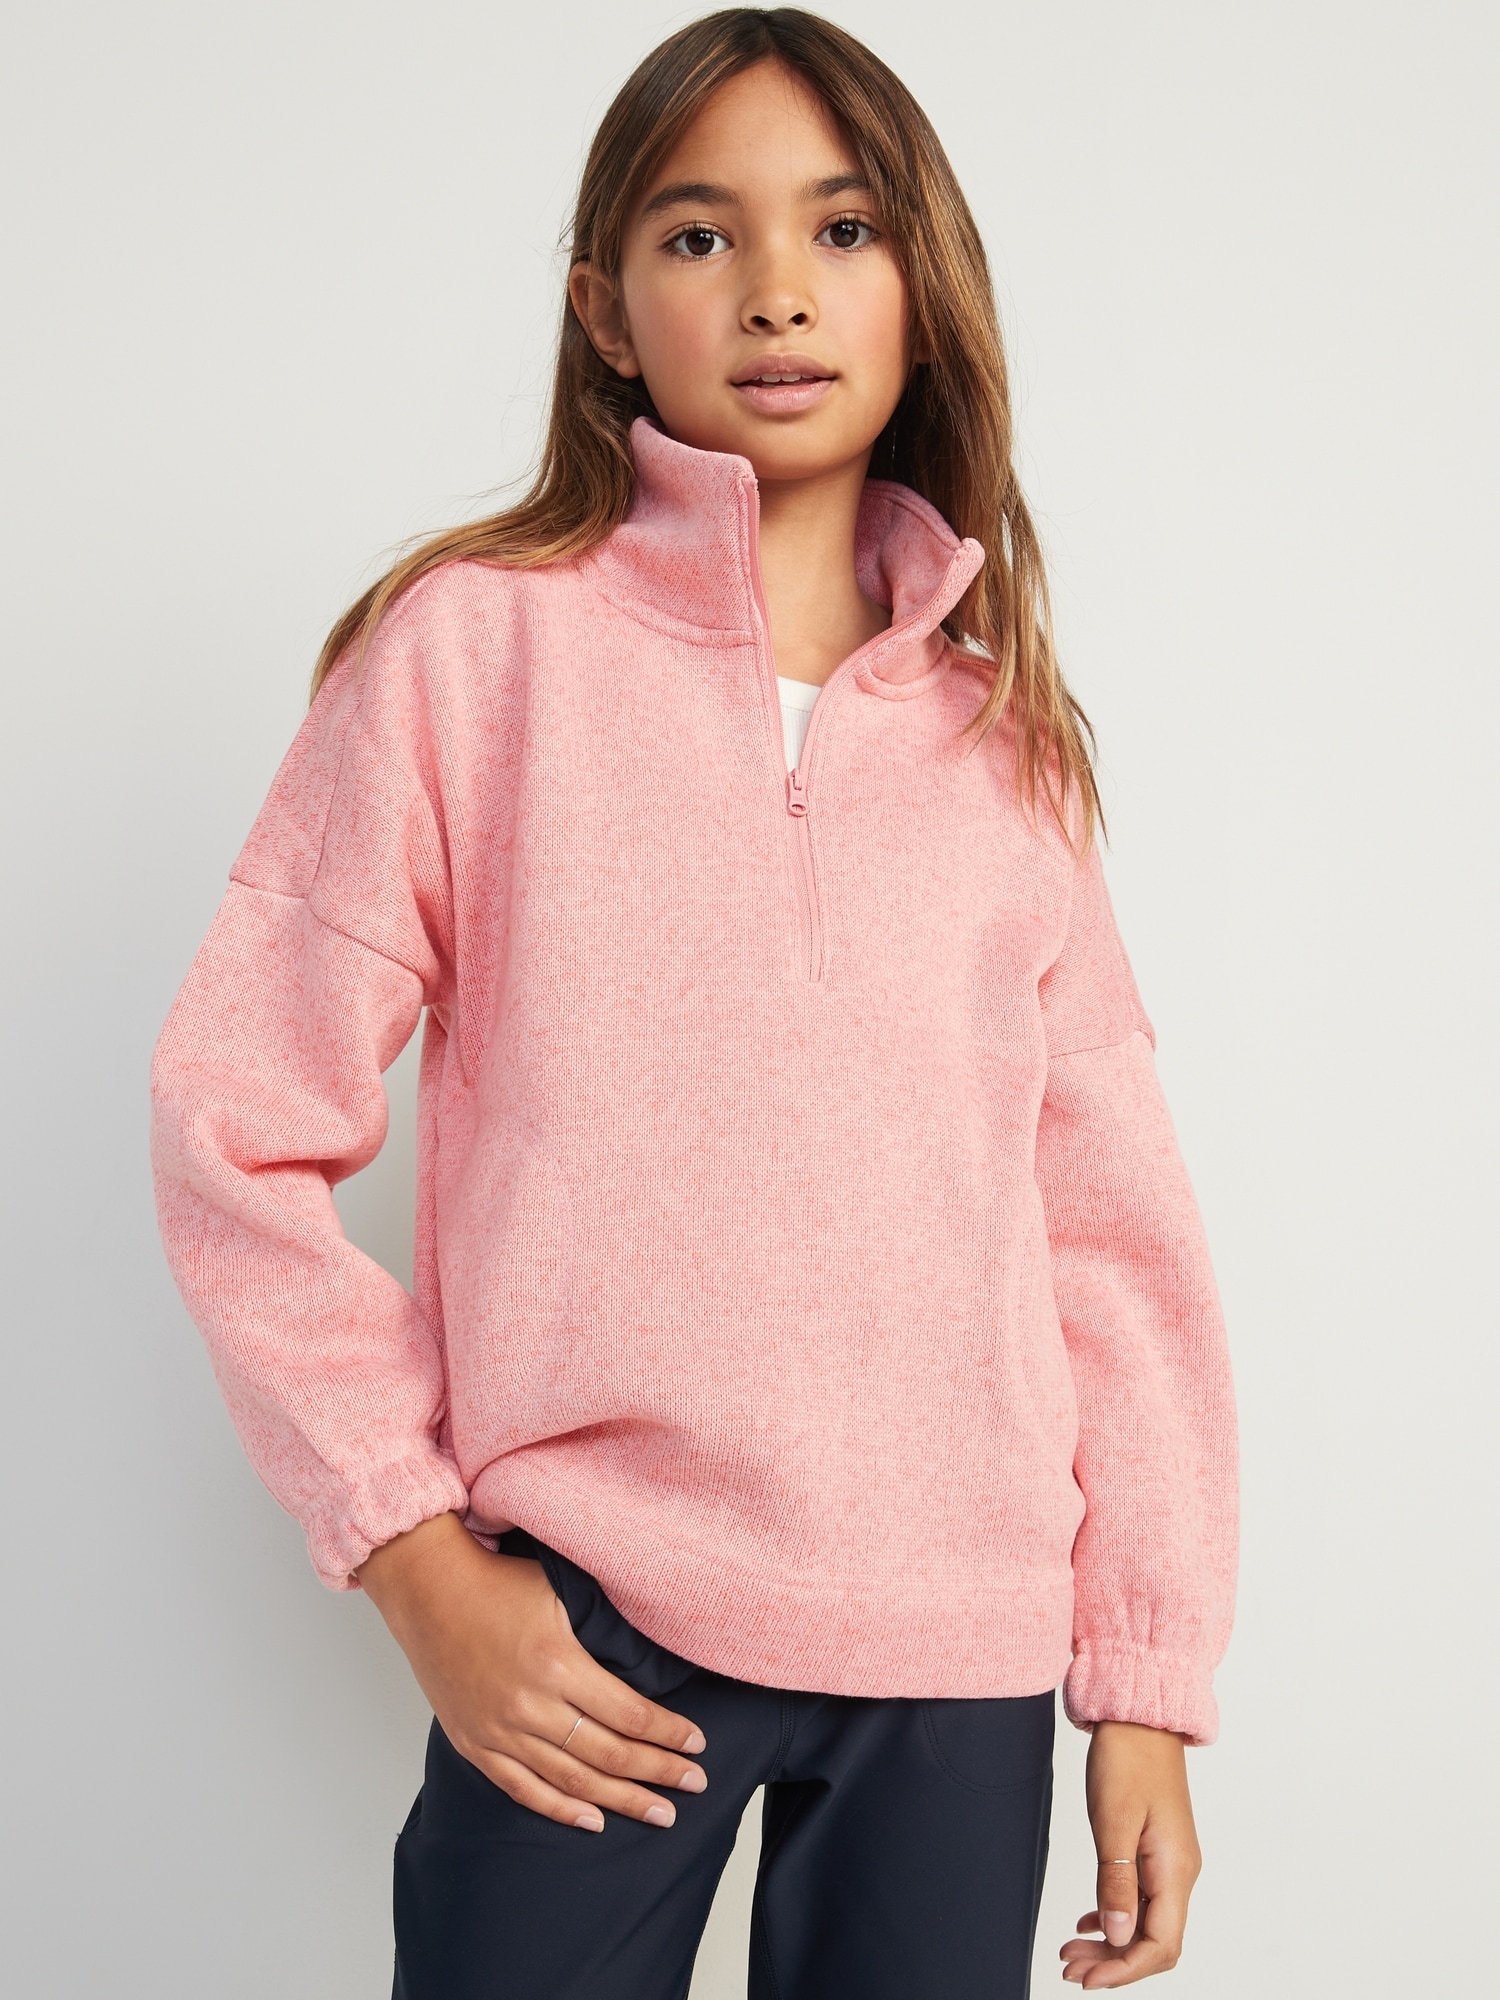 Oversized Mock-Neck Sweater-Fleece 1/2-Zip Pullover for Girls